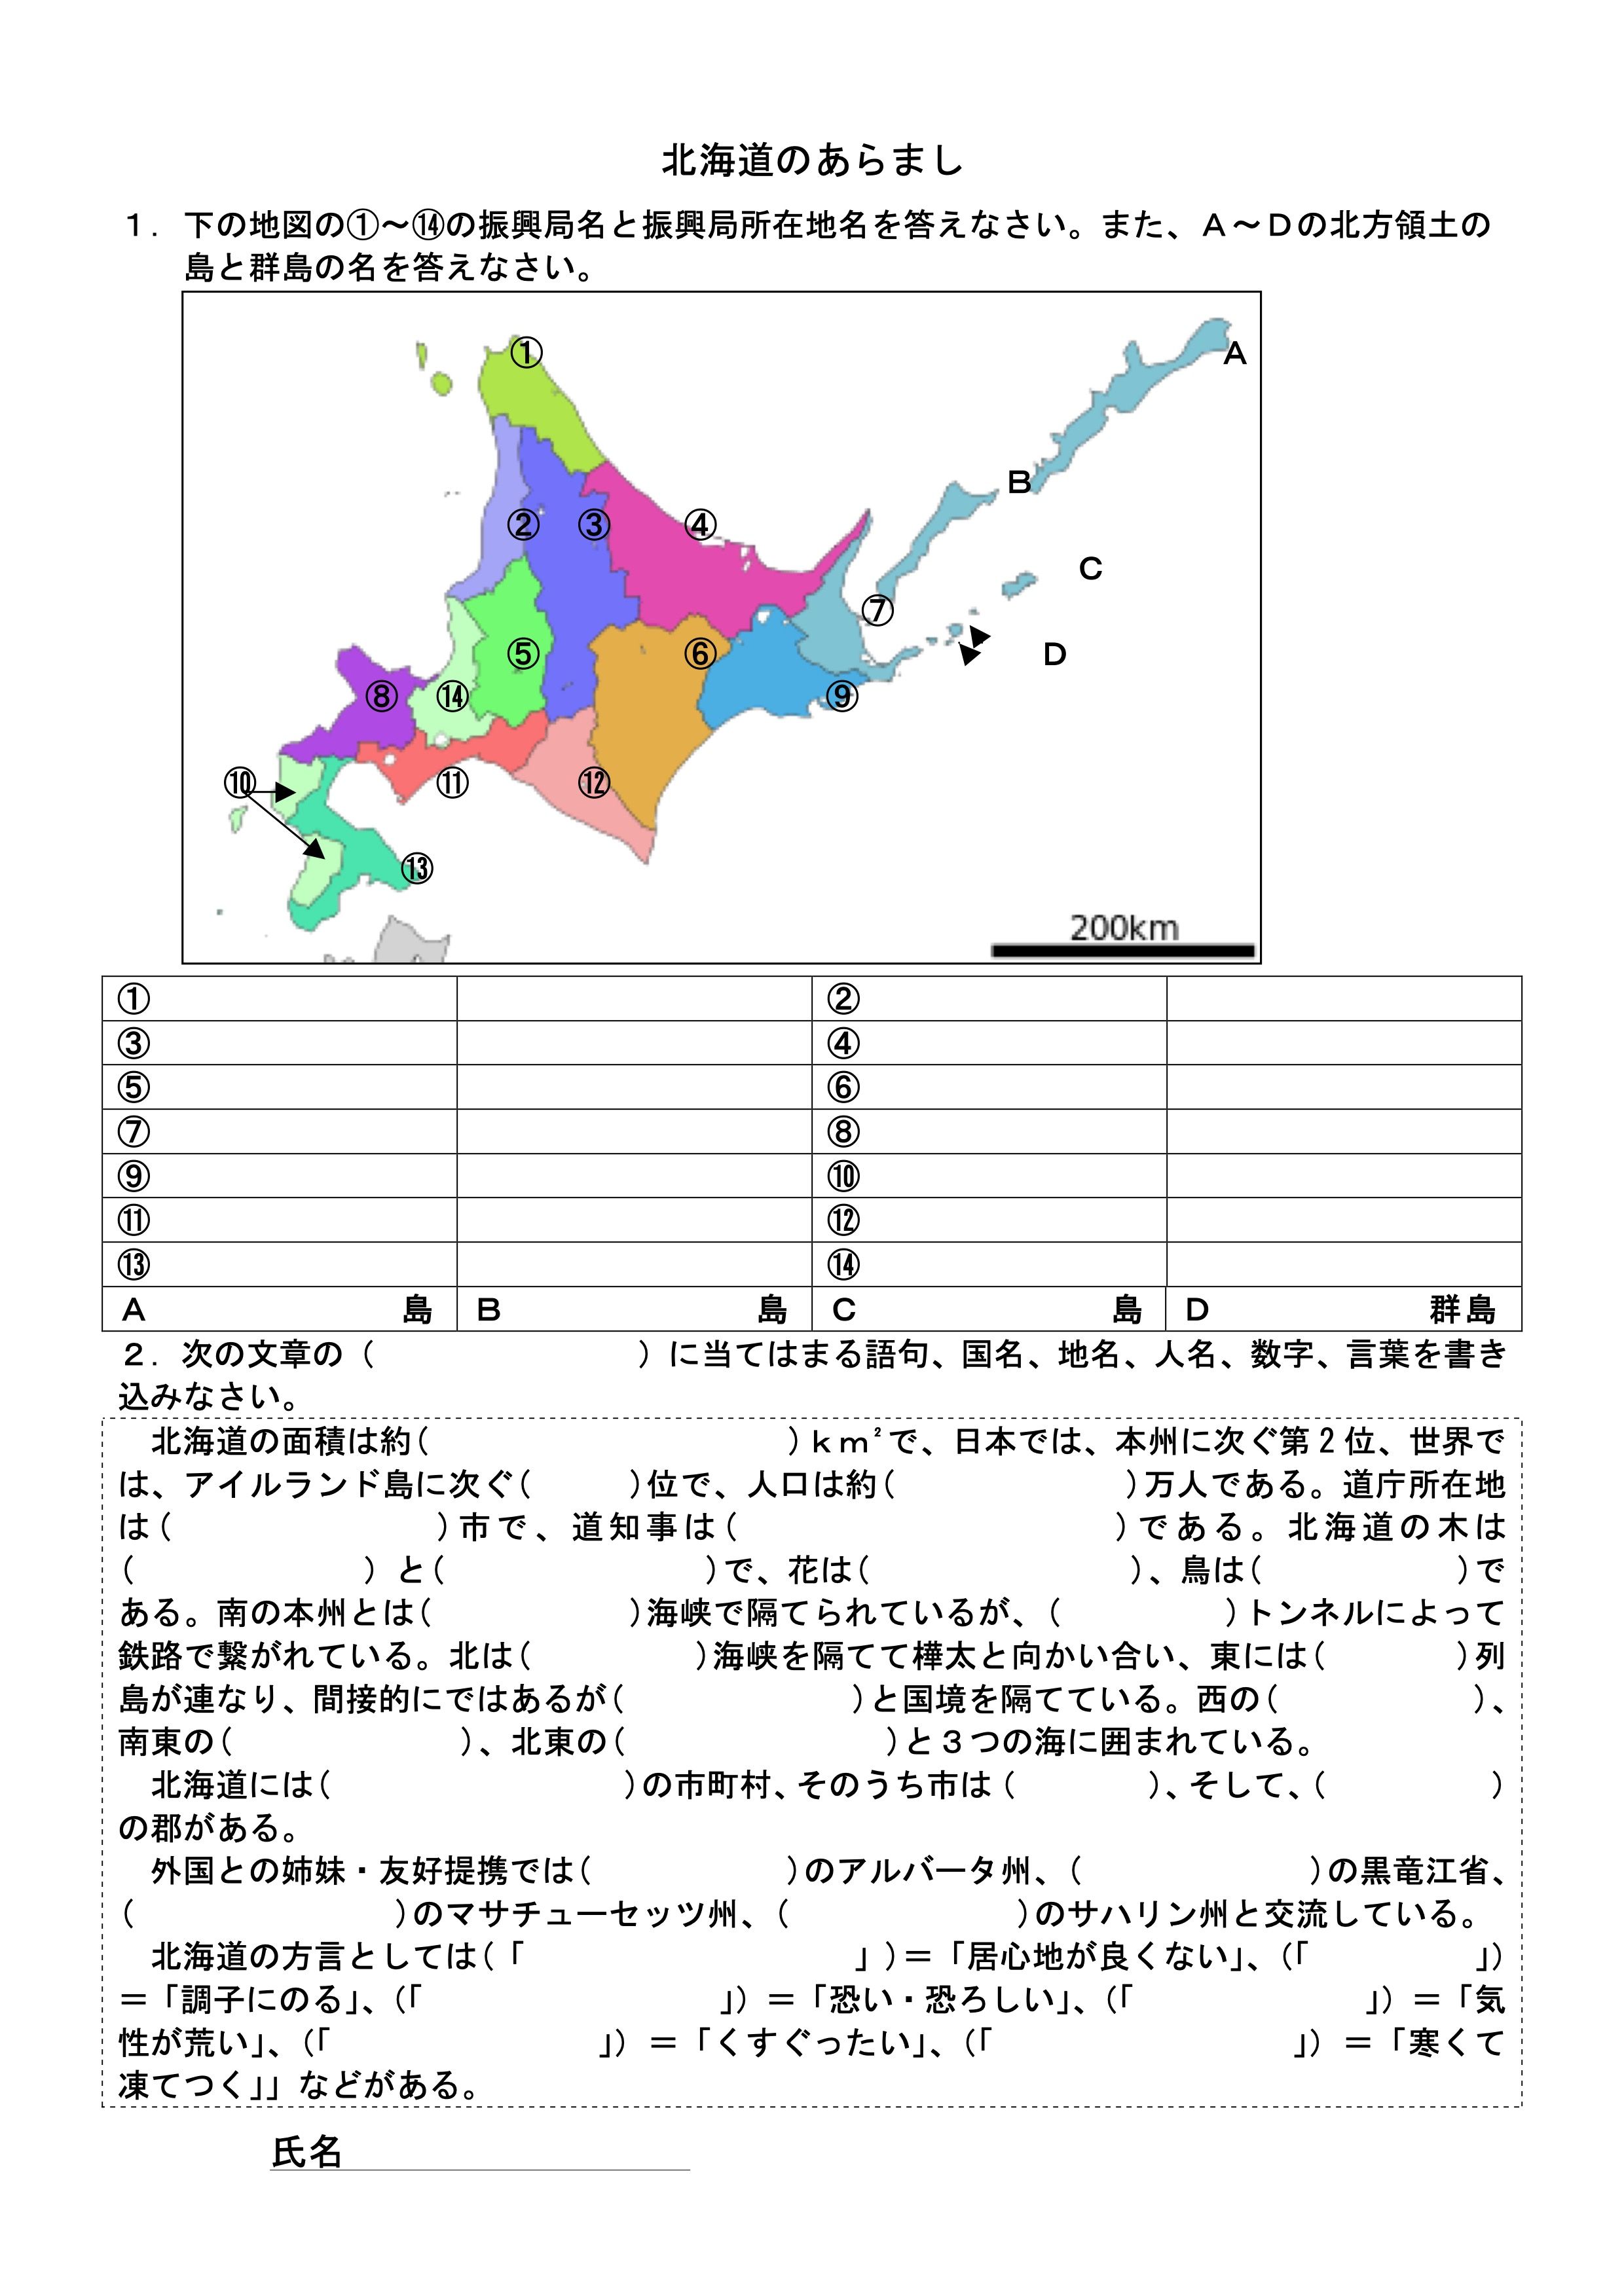 日本地理の学習 北海道のあらまし Sommelier Kakuji 社会科の部屋 楽天ブログ